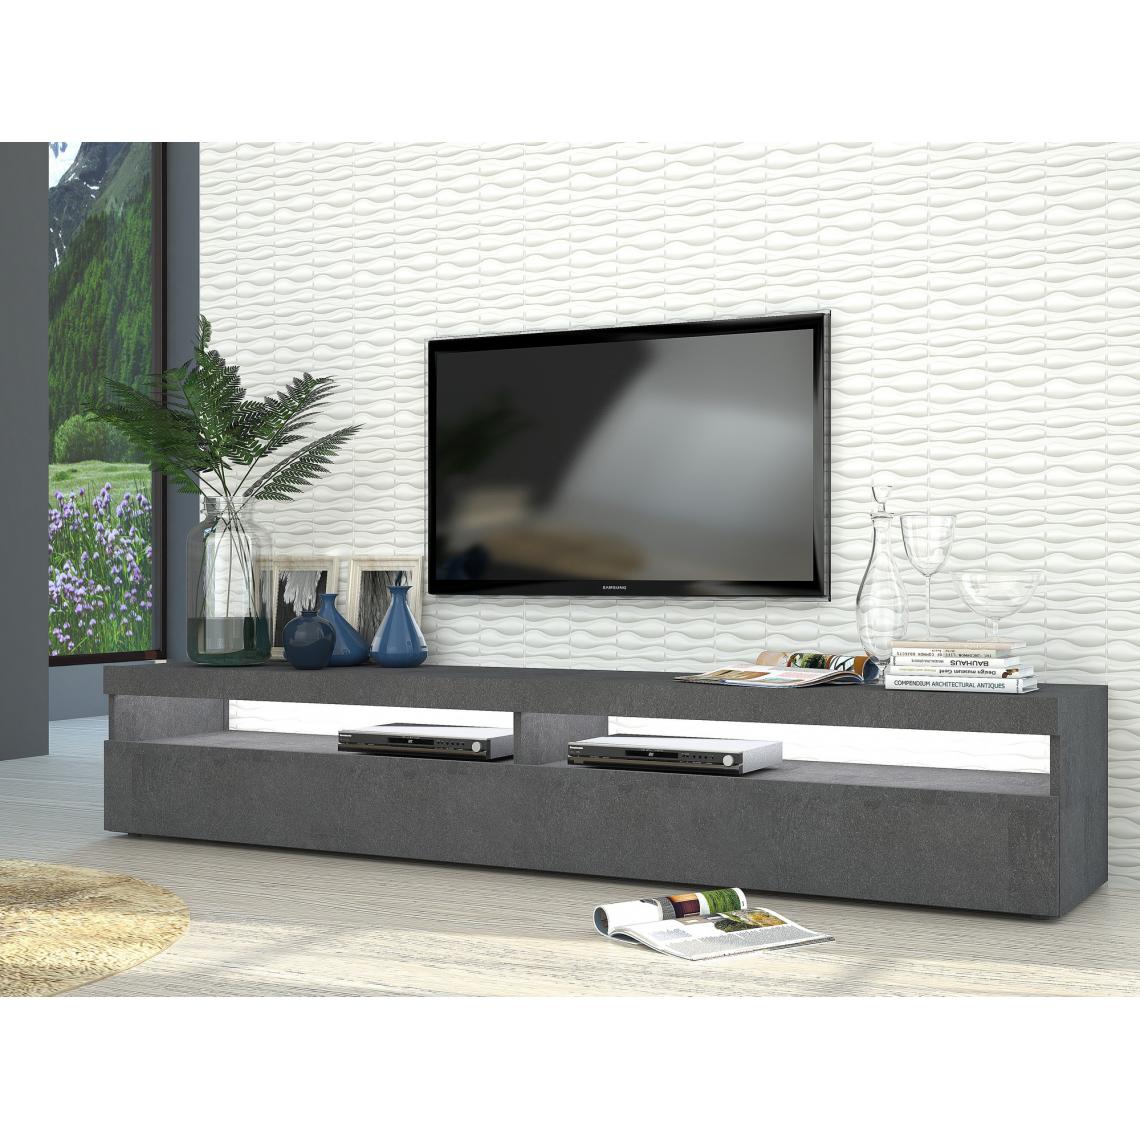 Alter - Meuble TV de salon, Made in Italy, Meuble TV avec 2 portes battantes, cm 200x45h36, couleur gris cendré, avec lumière LED blanche - Meubles TV, Hi-Fi